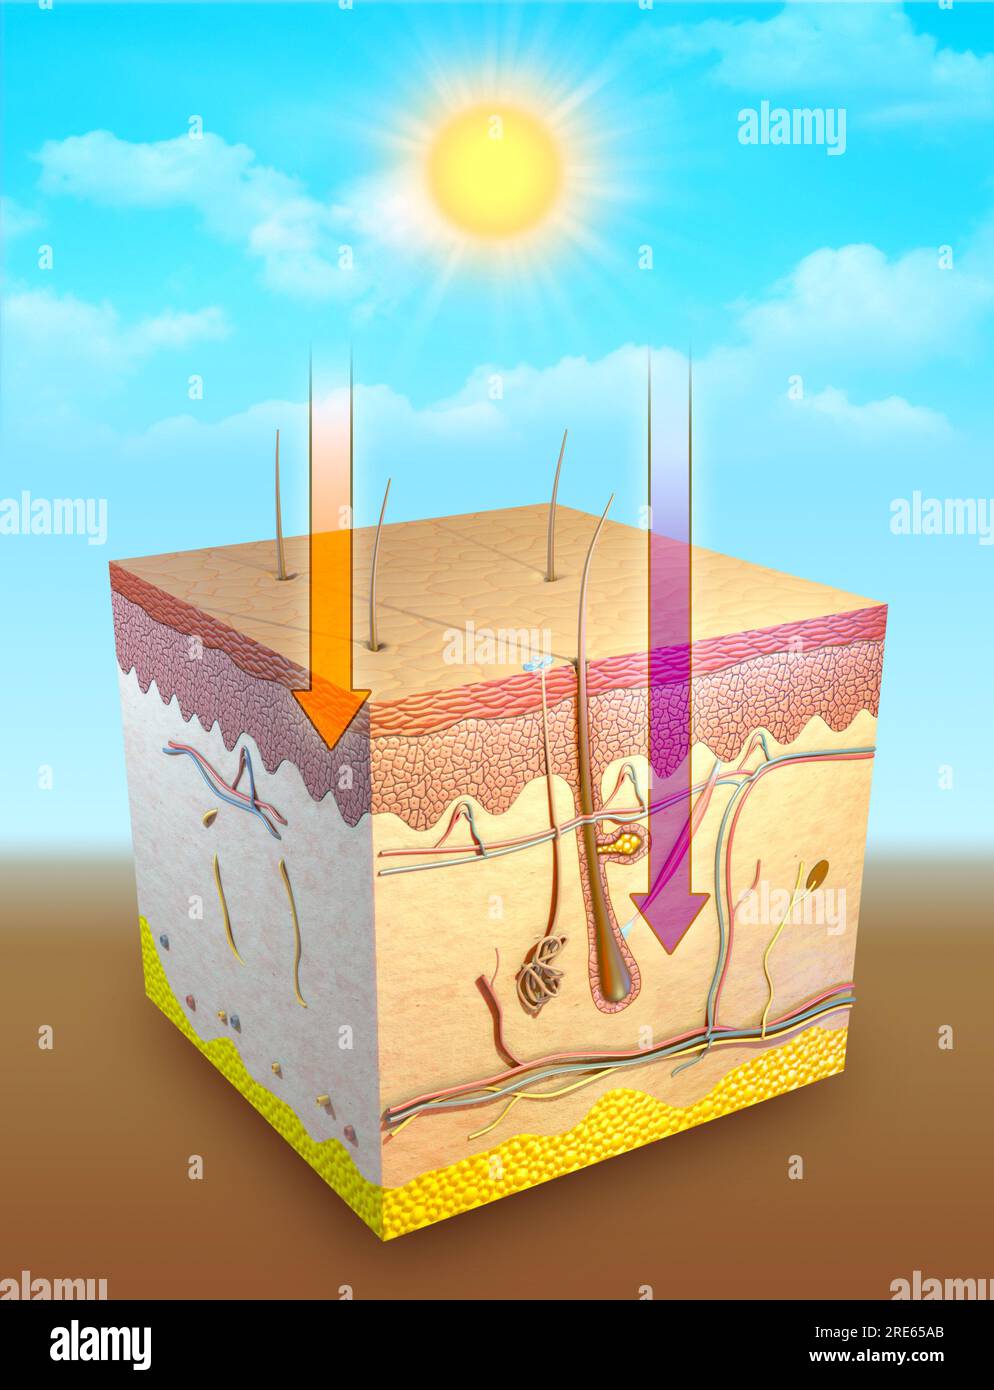 Abbildung der ermüdenden Wirkung von UV-Strahlen auf verschiedene Hautpartien. Digitale Illustration, 3D-Rendering. Stockfoto